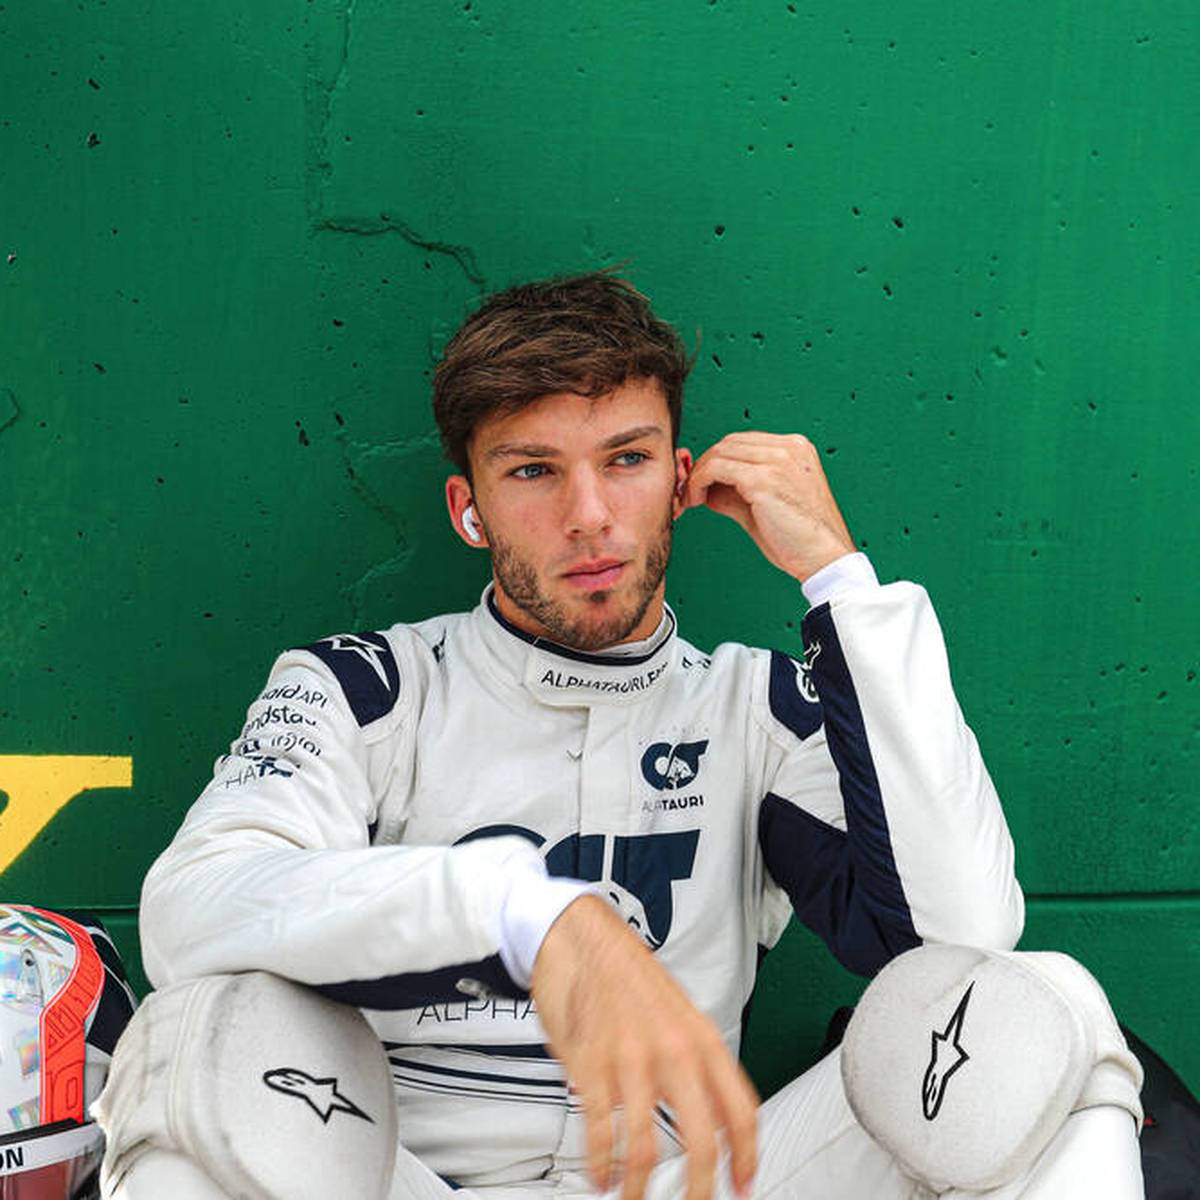 Pierre Gasly ist seit 2014 im Red-Bull-Förderprogramm. Motorsport-Chef Helmut Marko sieht aktuell jedoch keine Chance für eine Rückkehr zu Red Bull in der Formel 1.